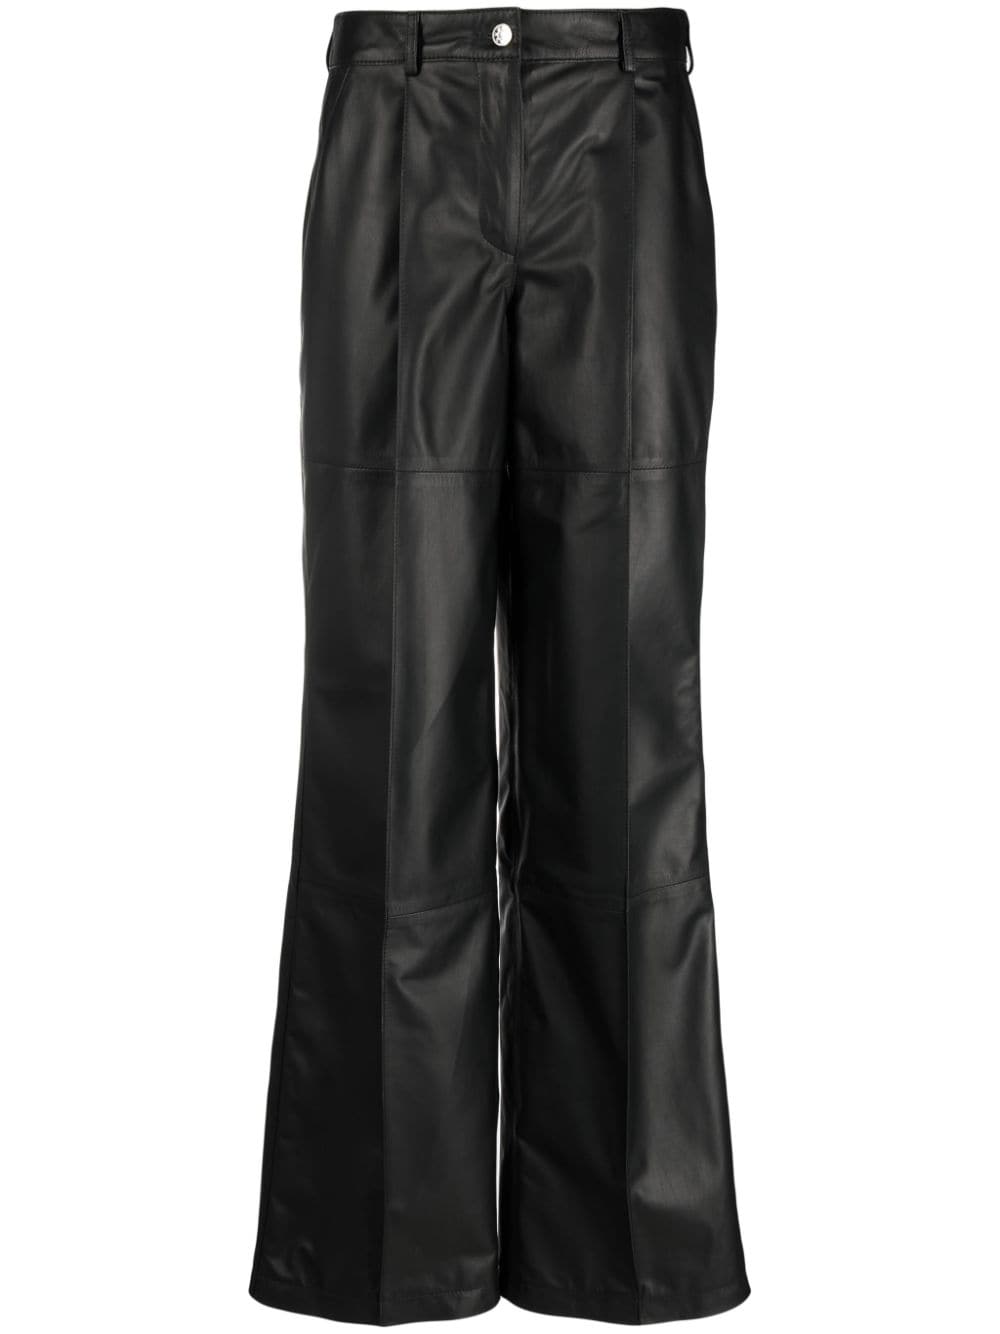 Manokhi high-waisted leather pants - Black von Manokhi